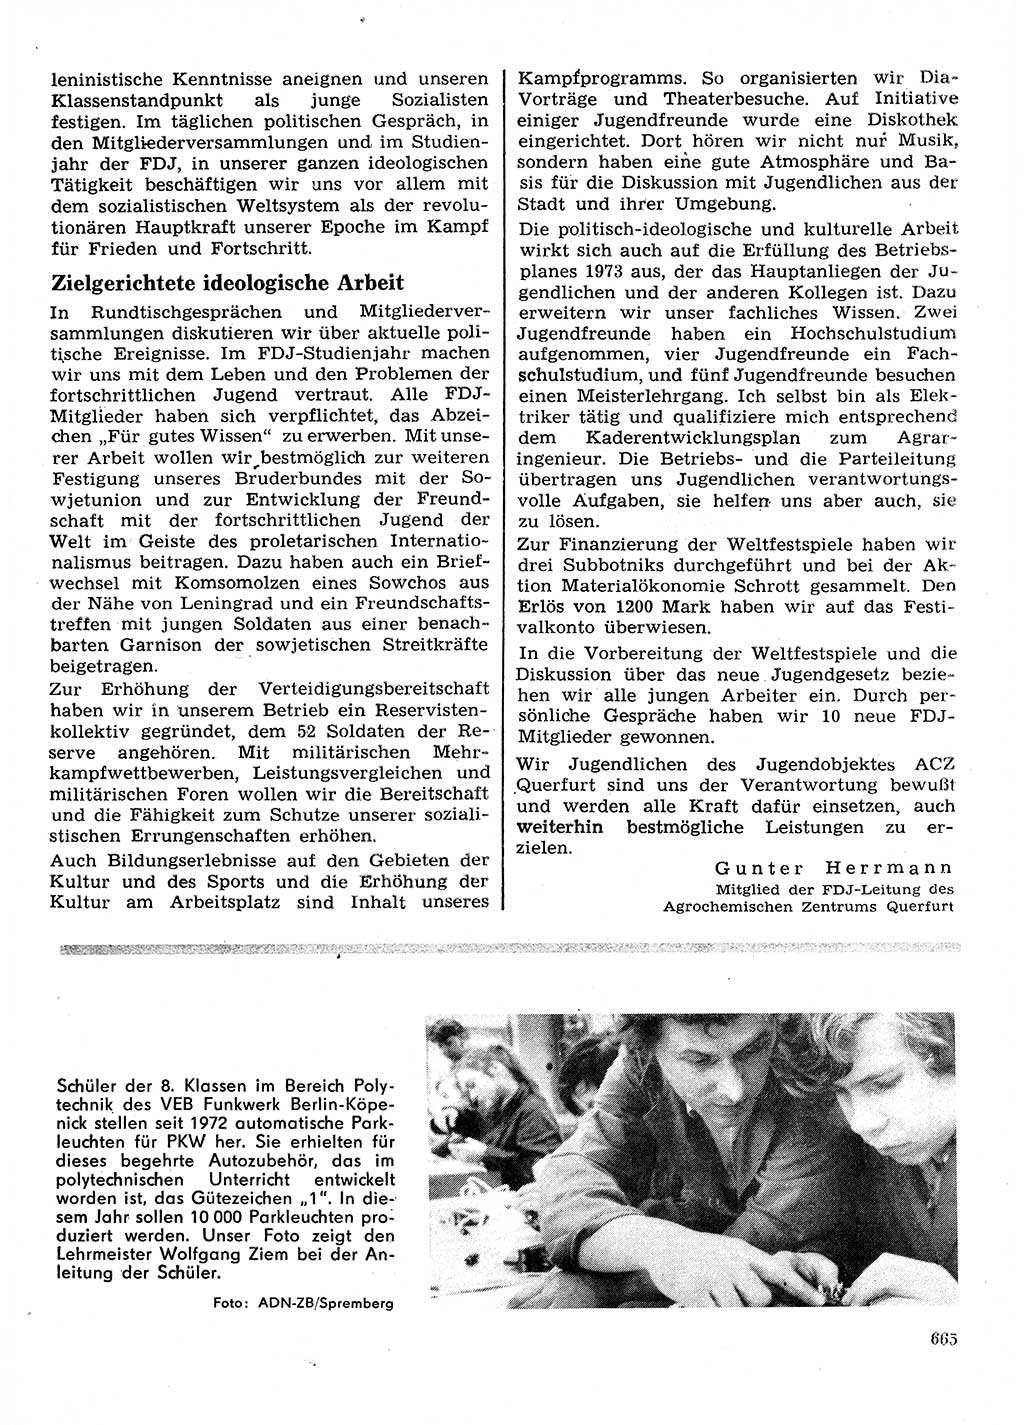 Neuer Weg (NW), Organ des Zentralkomitees (ZK) der SED (Sozialistische Einheitspartei Deutschlands) für Fragen des Parteilebens, 28. Jahrgang [Deutsche Demokratische Republik (DDR)] 1973, Seite 665 (NW ZK SED DDR 1973, S. 665)